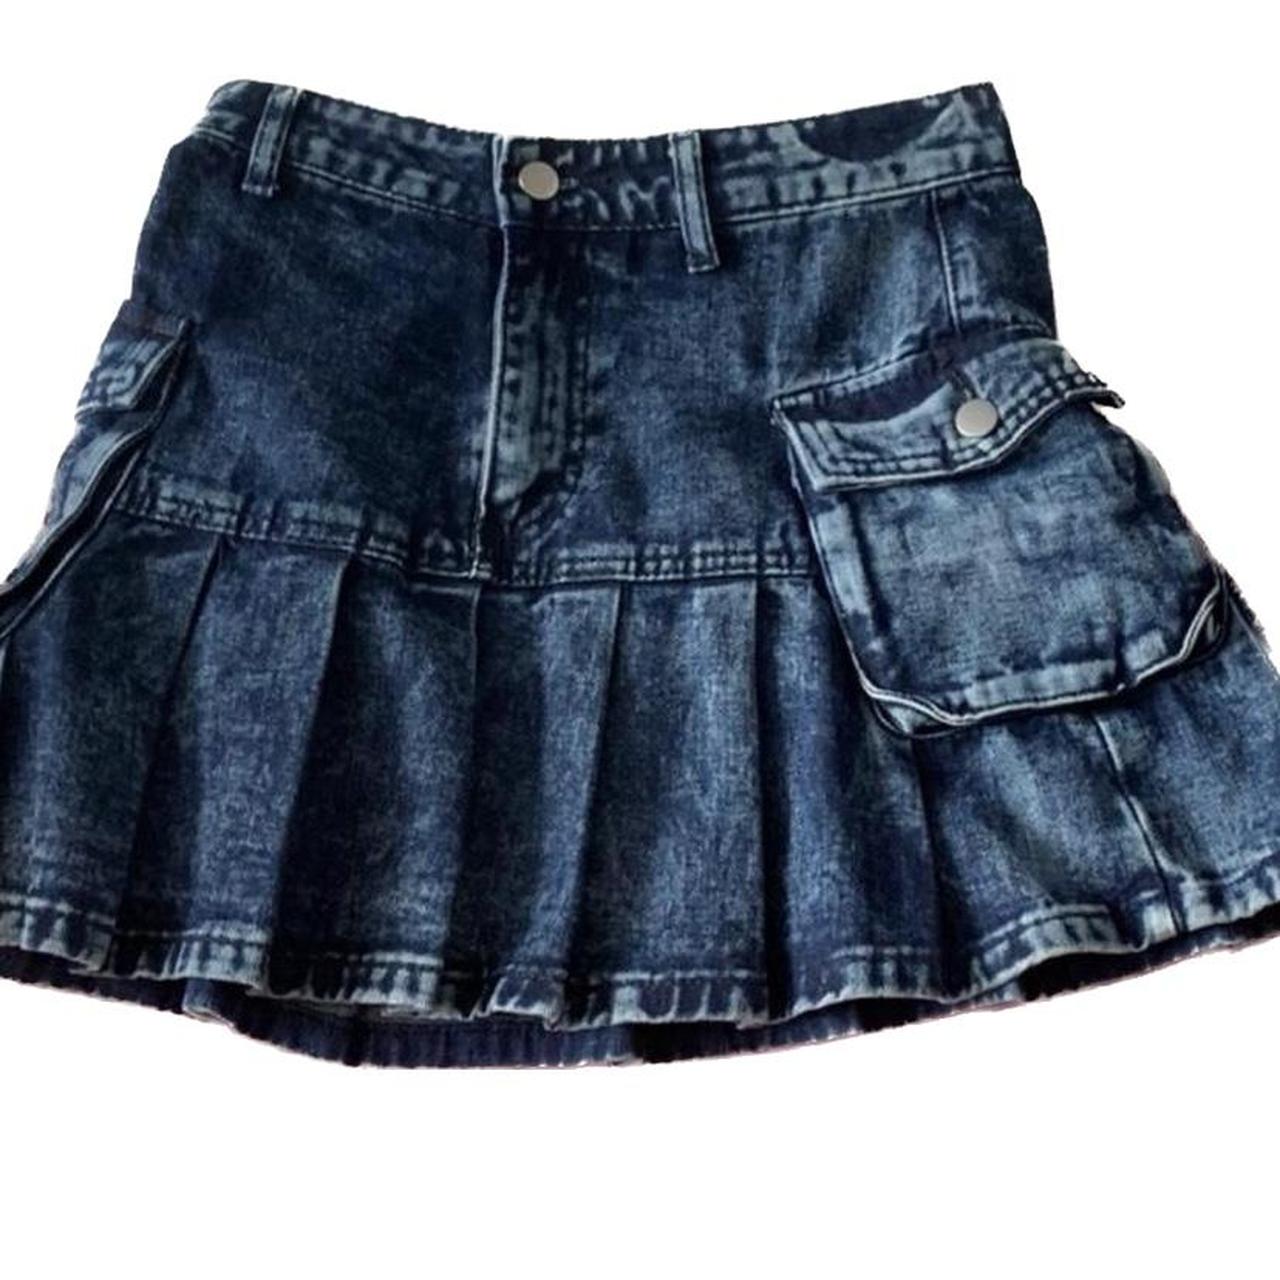 Unbranded Y2K pleated denim look mini skirt! Only... - Depop